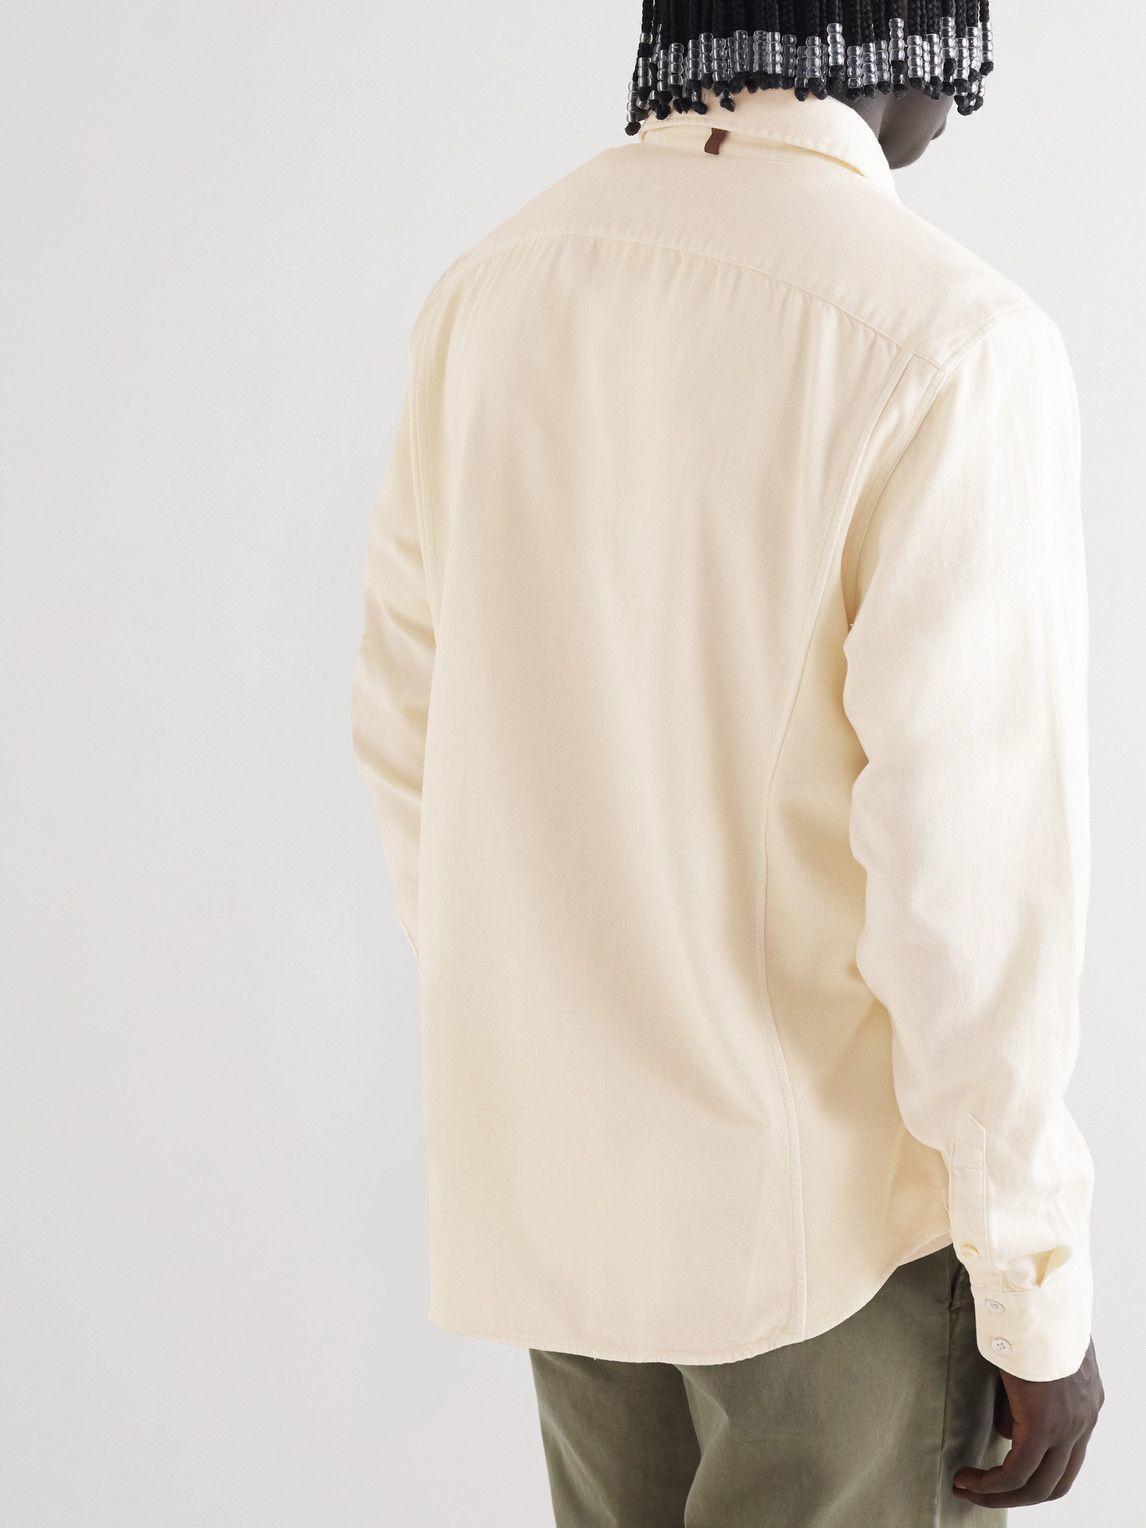 Rag & Bone - Pursuit 365 Garment-Dyed Cotton-Flannel Shirt - Neutrals ...